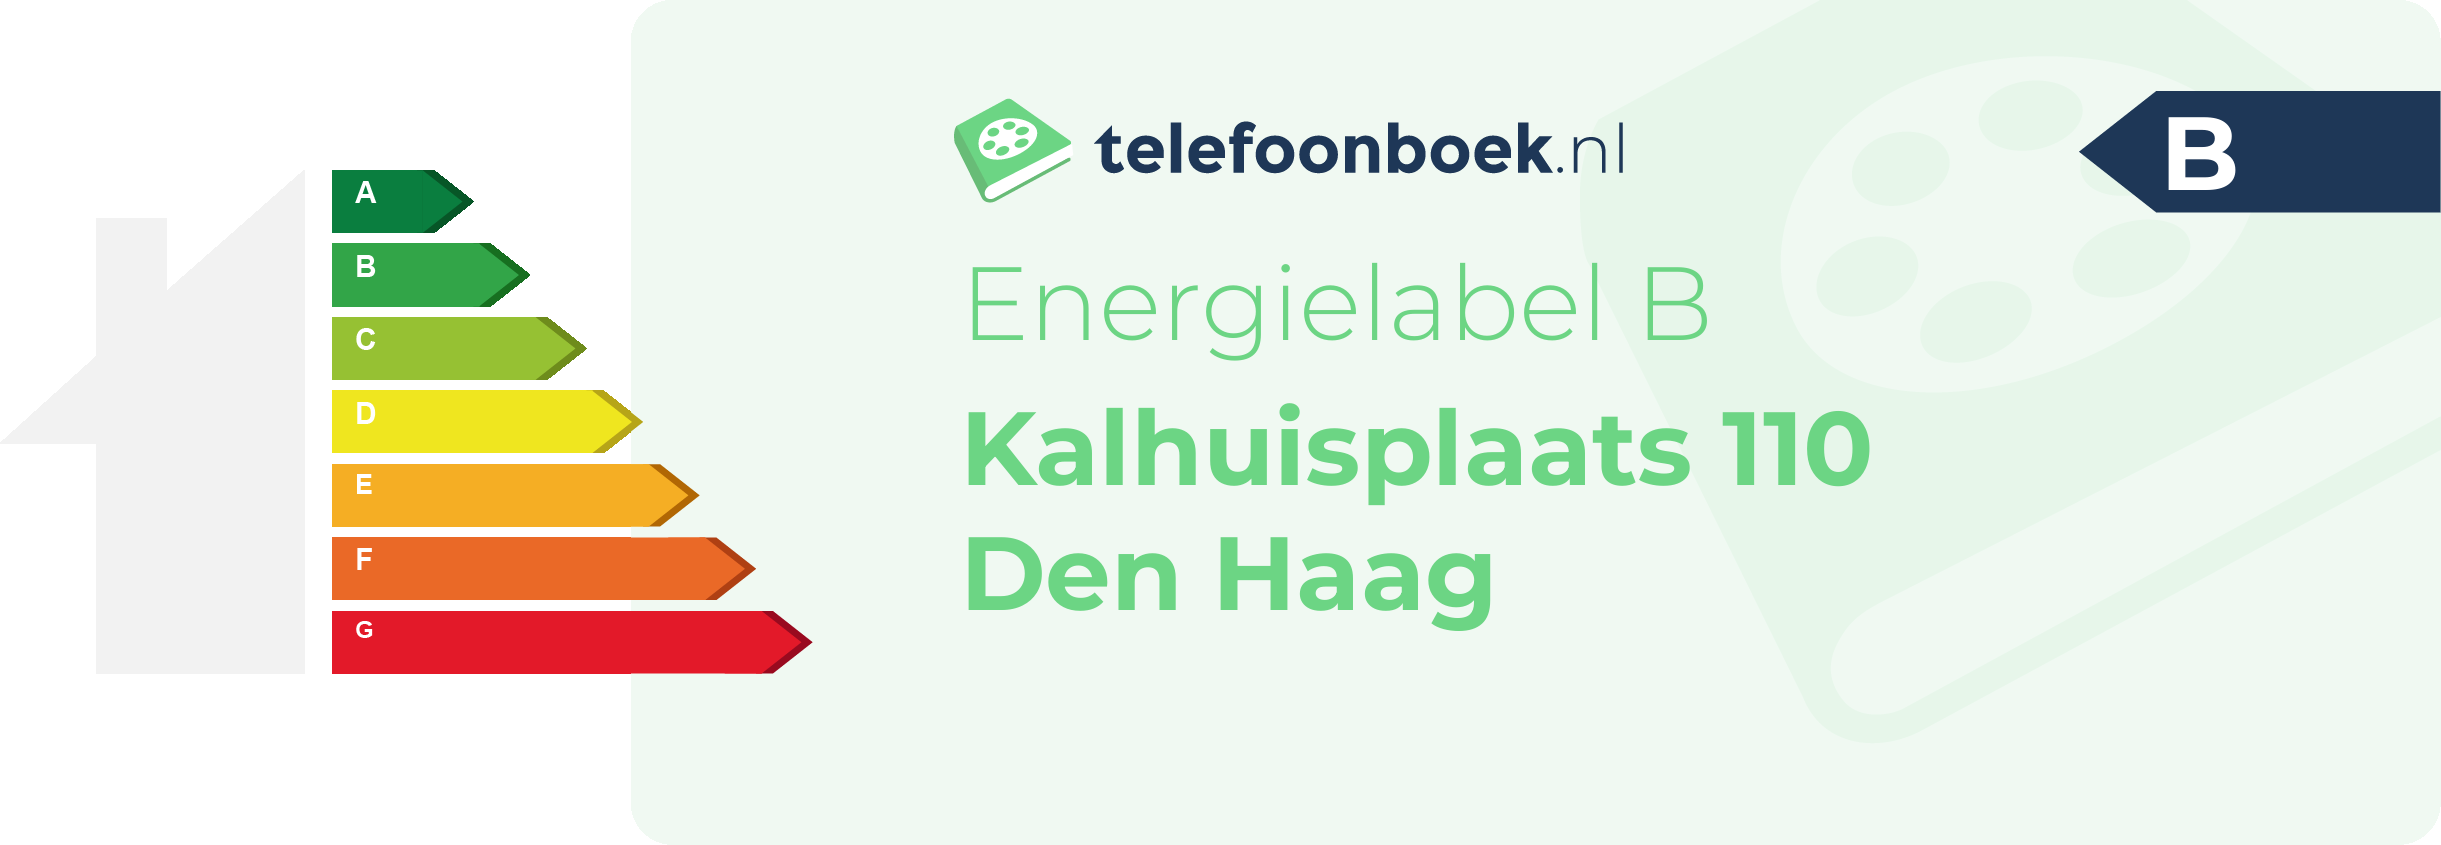 Energielabel Kalhuisplaats 110 Den Haag